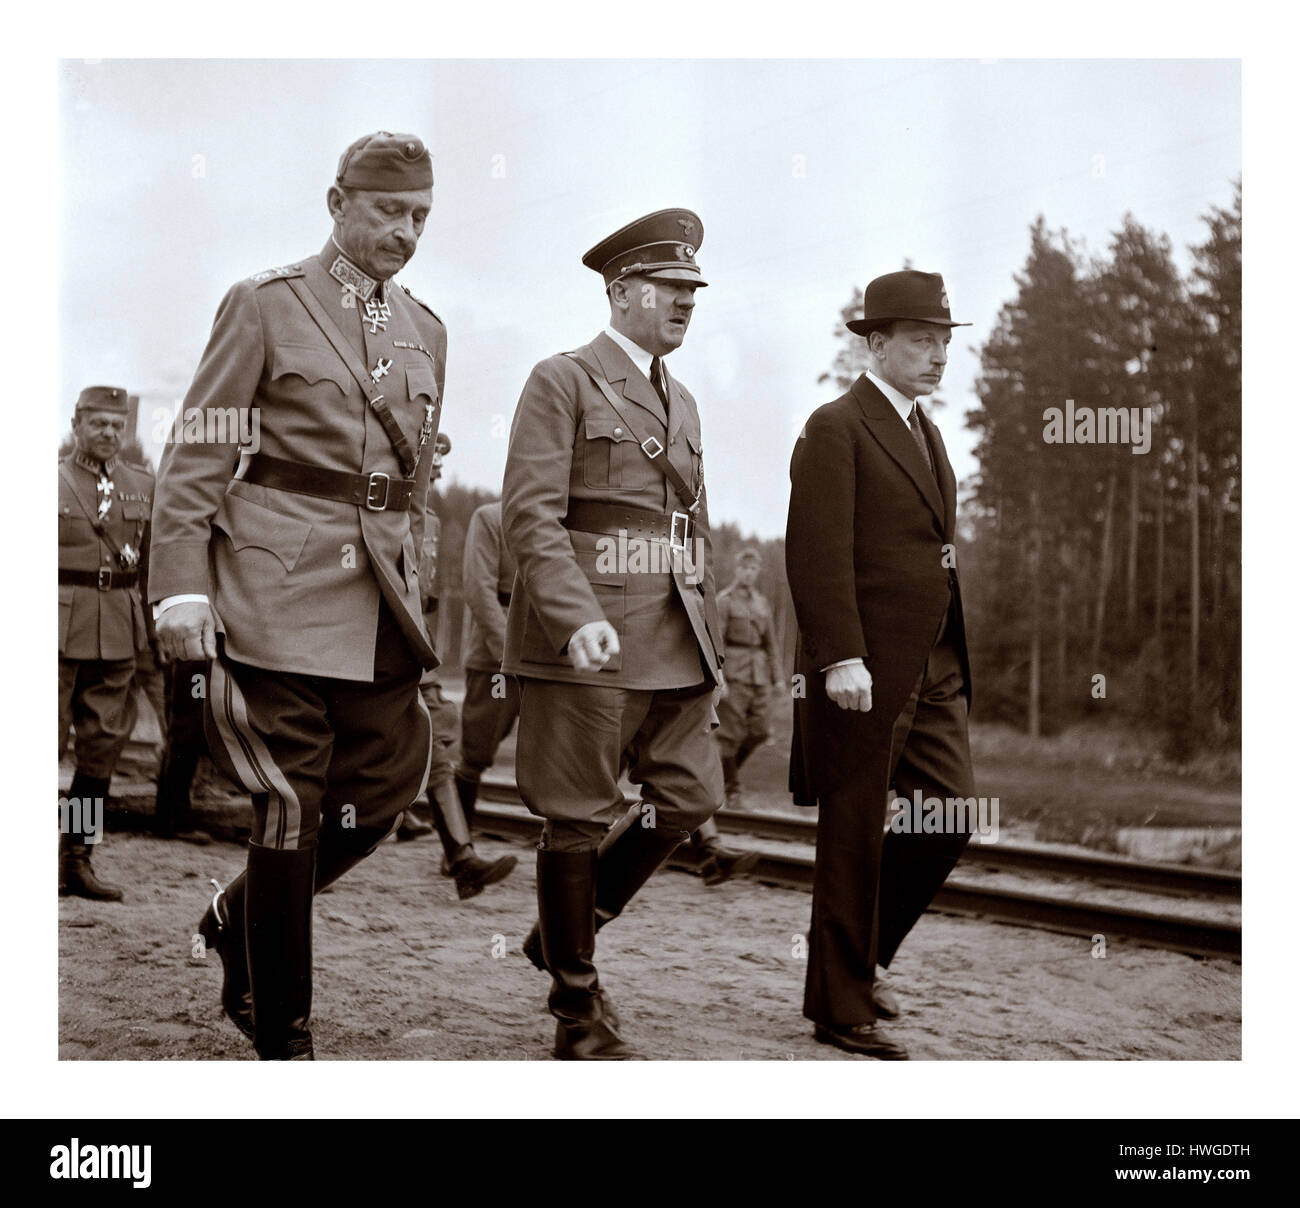 MANNERHEIM / HITLER Adolf Hitler a décidé de visiter la Finlande le 4 juin 1942, officiellement pour féliciter de son 75e anniversaire de Mannerheim. Mannerheim, mais n'a pas voulu le rencontrer dans son quartier général de Mikkeli ou à Helsinki, comme il aurait semblé comme une visite d'État officielle. La rencontre a eu lieu près de Imatra, dans le sud-est de la Finlande, et a été organisée dans le secret de l'Aérodrome Immola, Hitler, accompagné par le Président Ryti, a été conduit à l'endroit où nous attendait à Mannerheim une voie de garage. La réunion n'était pas concluant... Banque D'Images